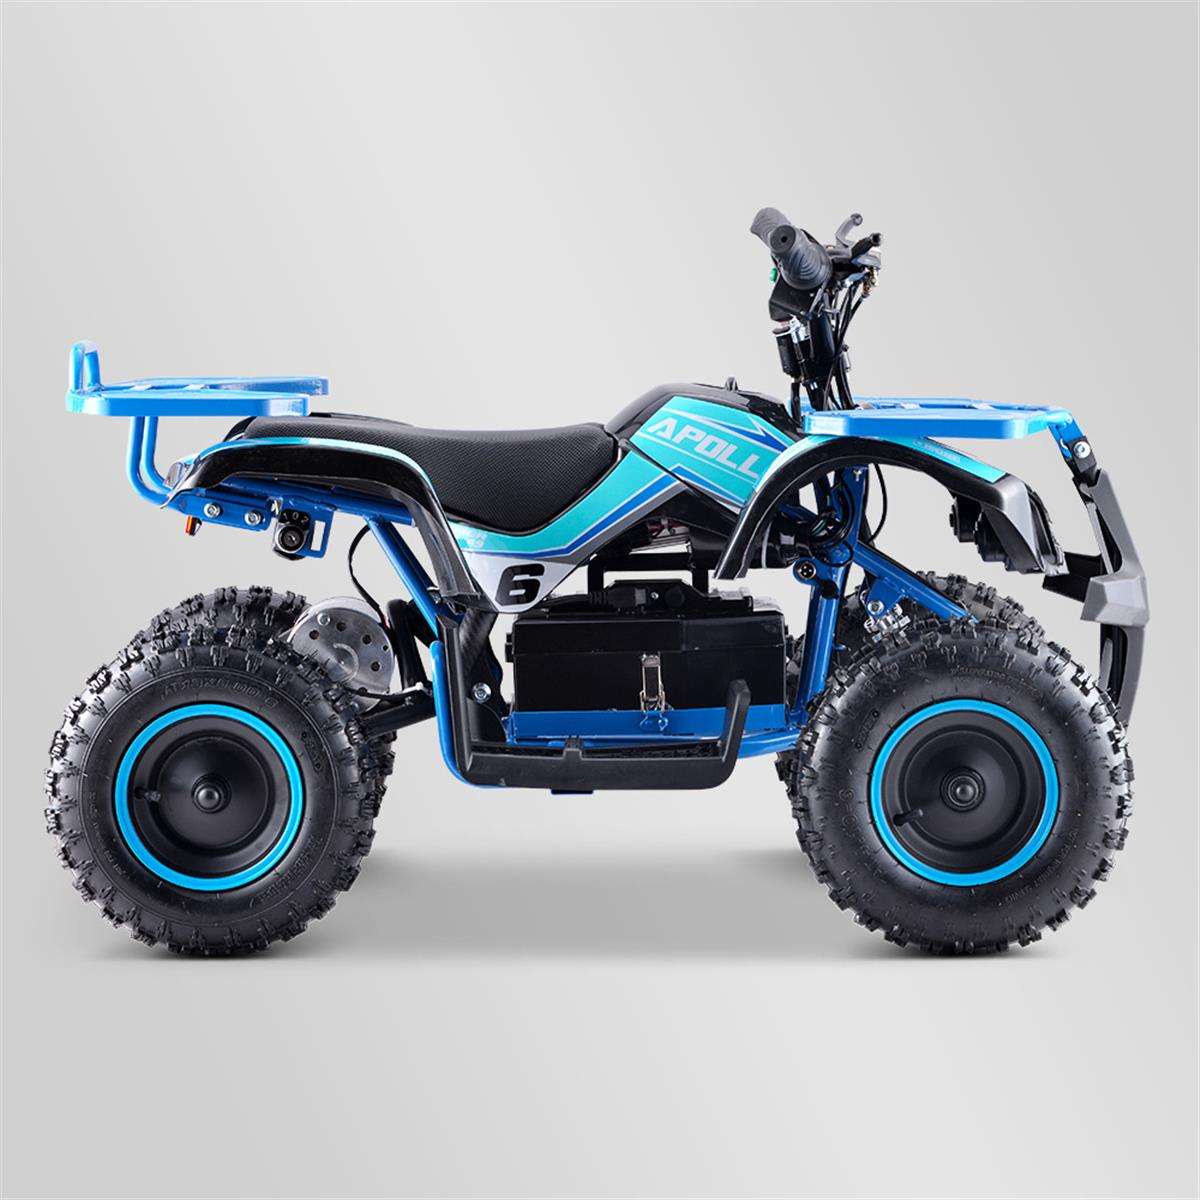 Quad Electrique 800w Enfant Bleu Utilitaire - Extrem Motos